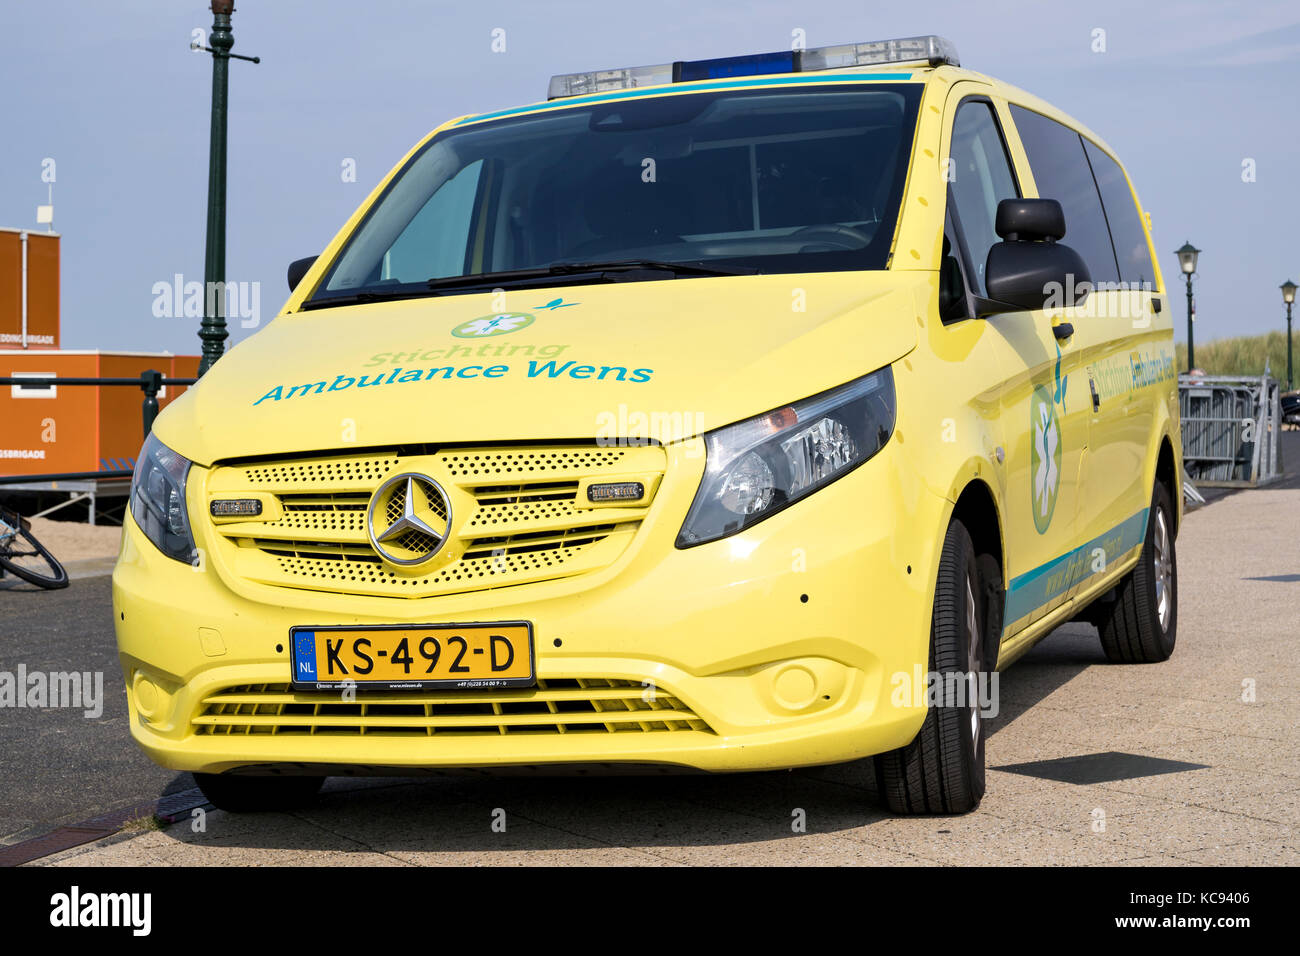 ambulance van of Stichting Ambulance Wens (Last Wish Foundation) at the boulevard in Scheveningen, Netherlands Stock Photo